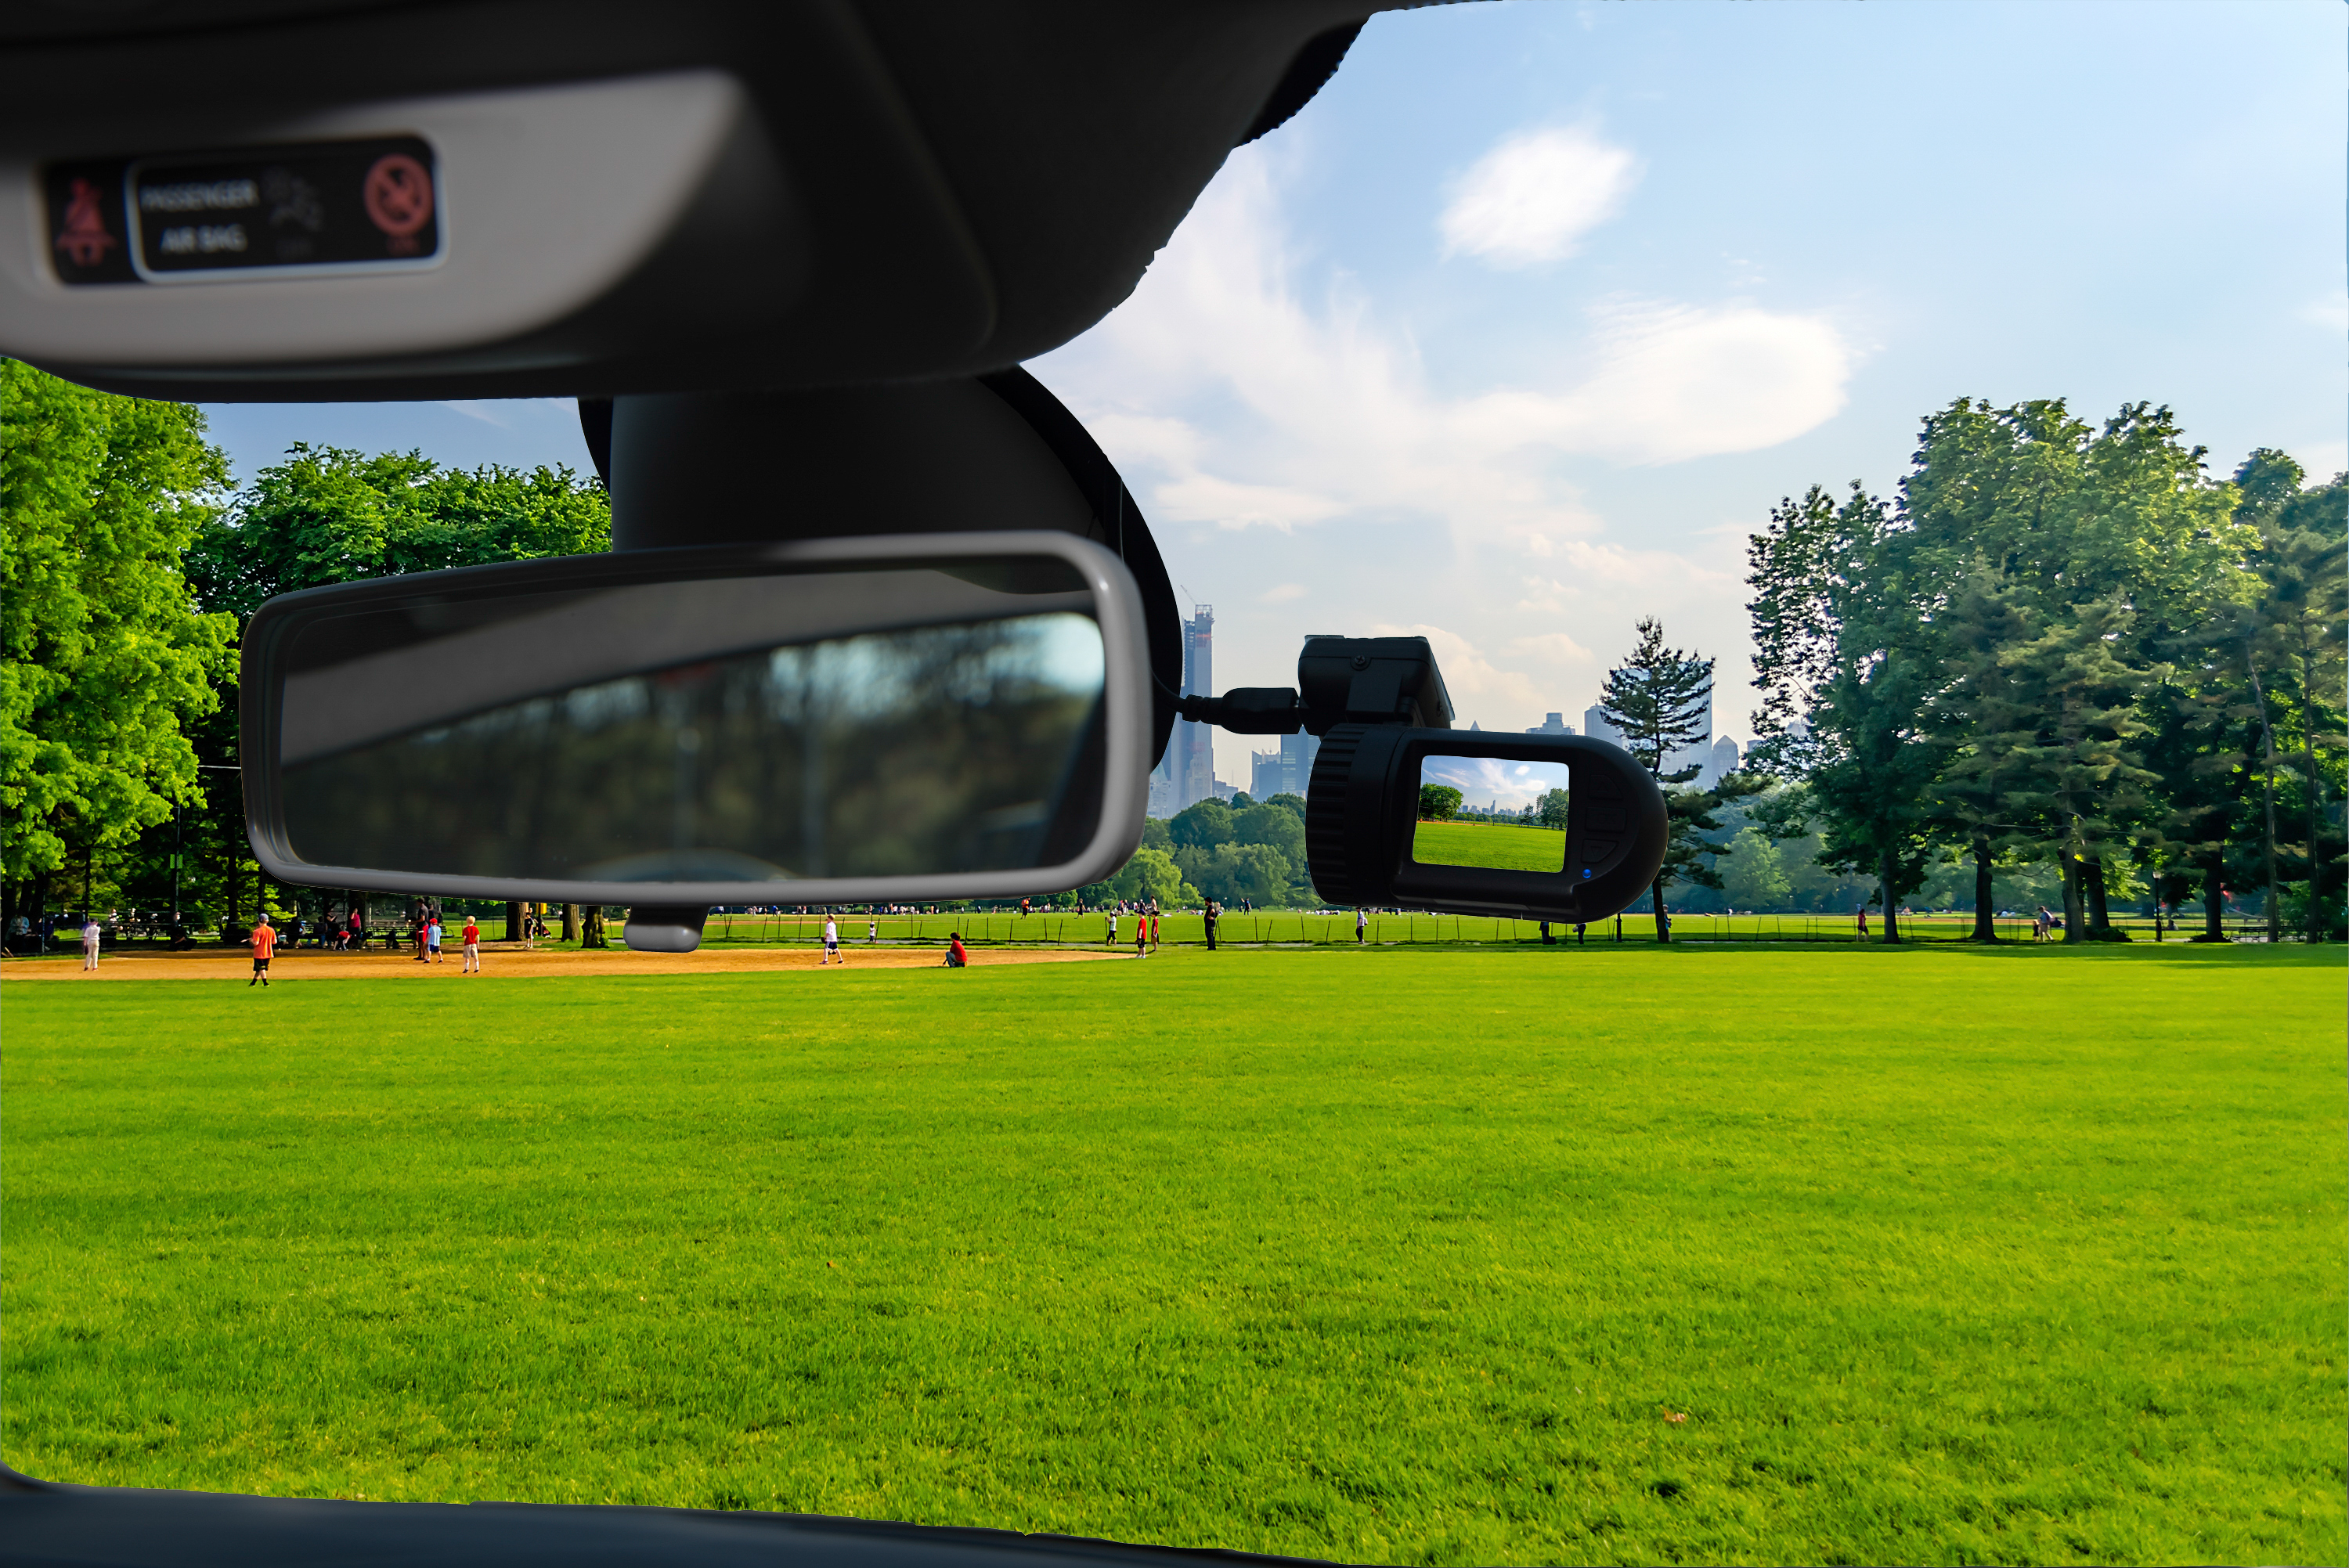 Eine Dashcam-Autokamera, die an einer Windschutzscheibe installiert ist | Quelle: Getty Images